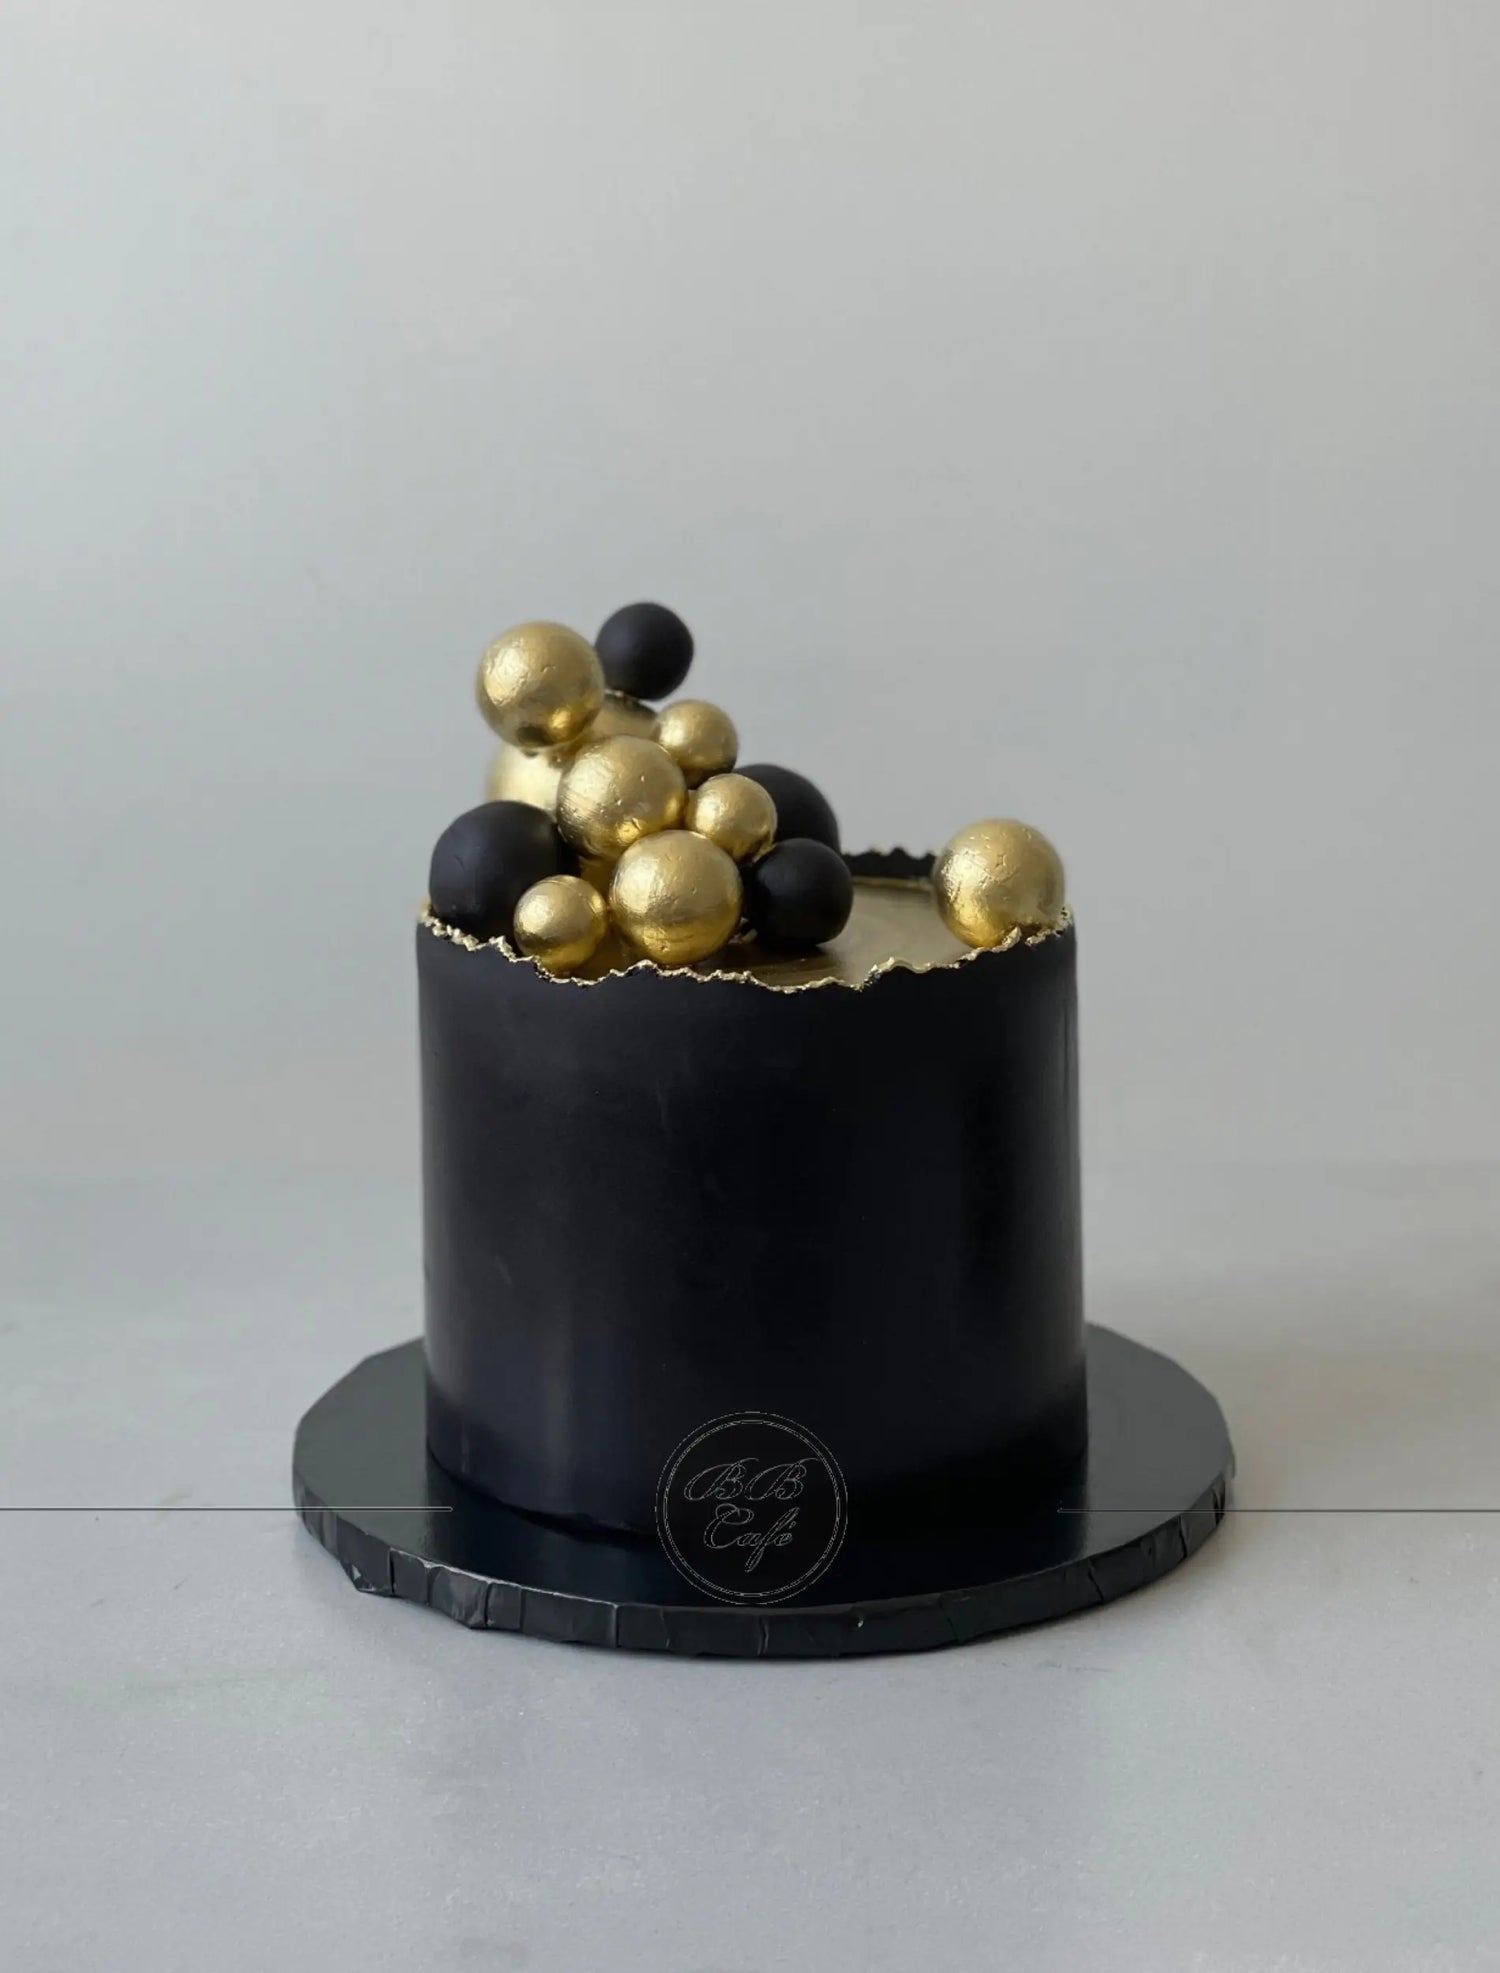 Spheres on deckled edge fondant - custom cake